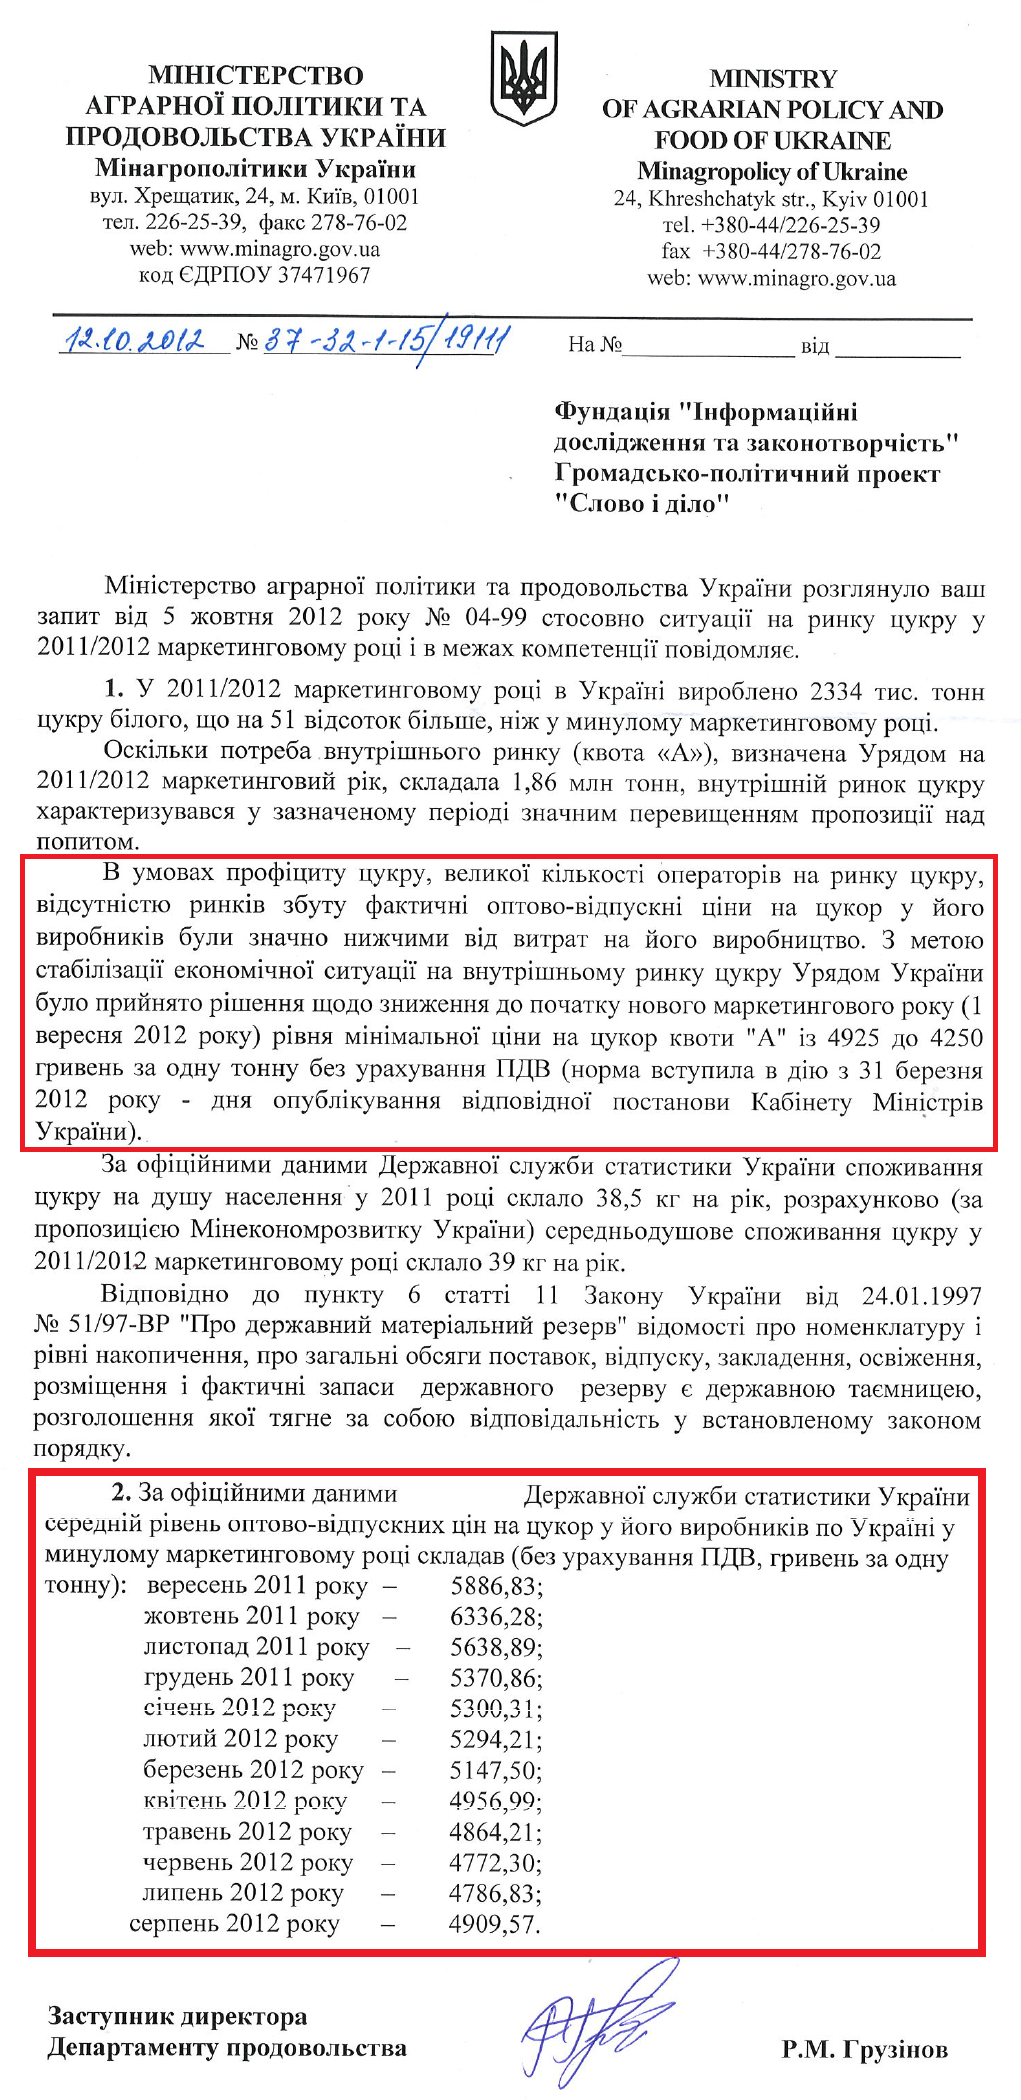 Лист Заступника директора Департаменту проводовольства Мінагропроду Р.М.Грузінова від 12 жовтня 2012 року